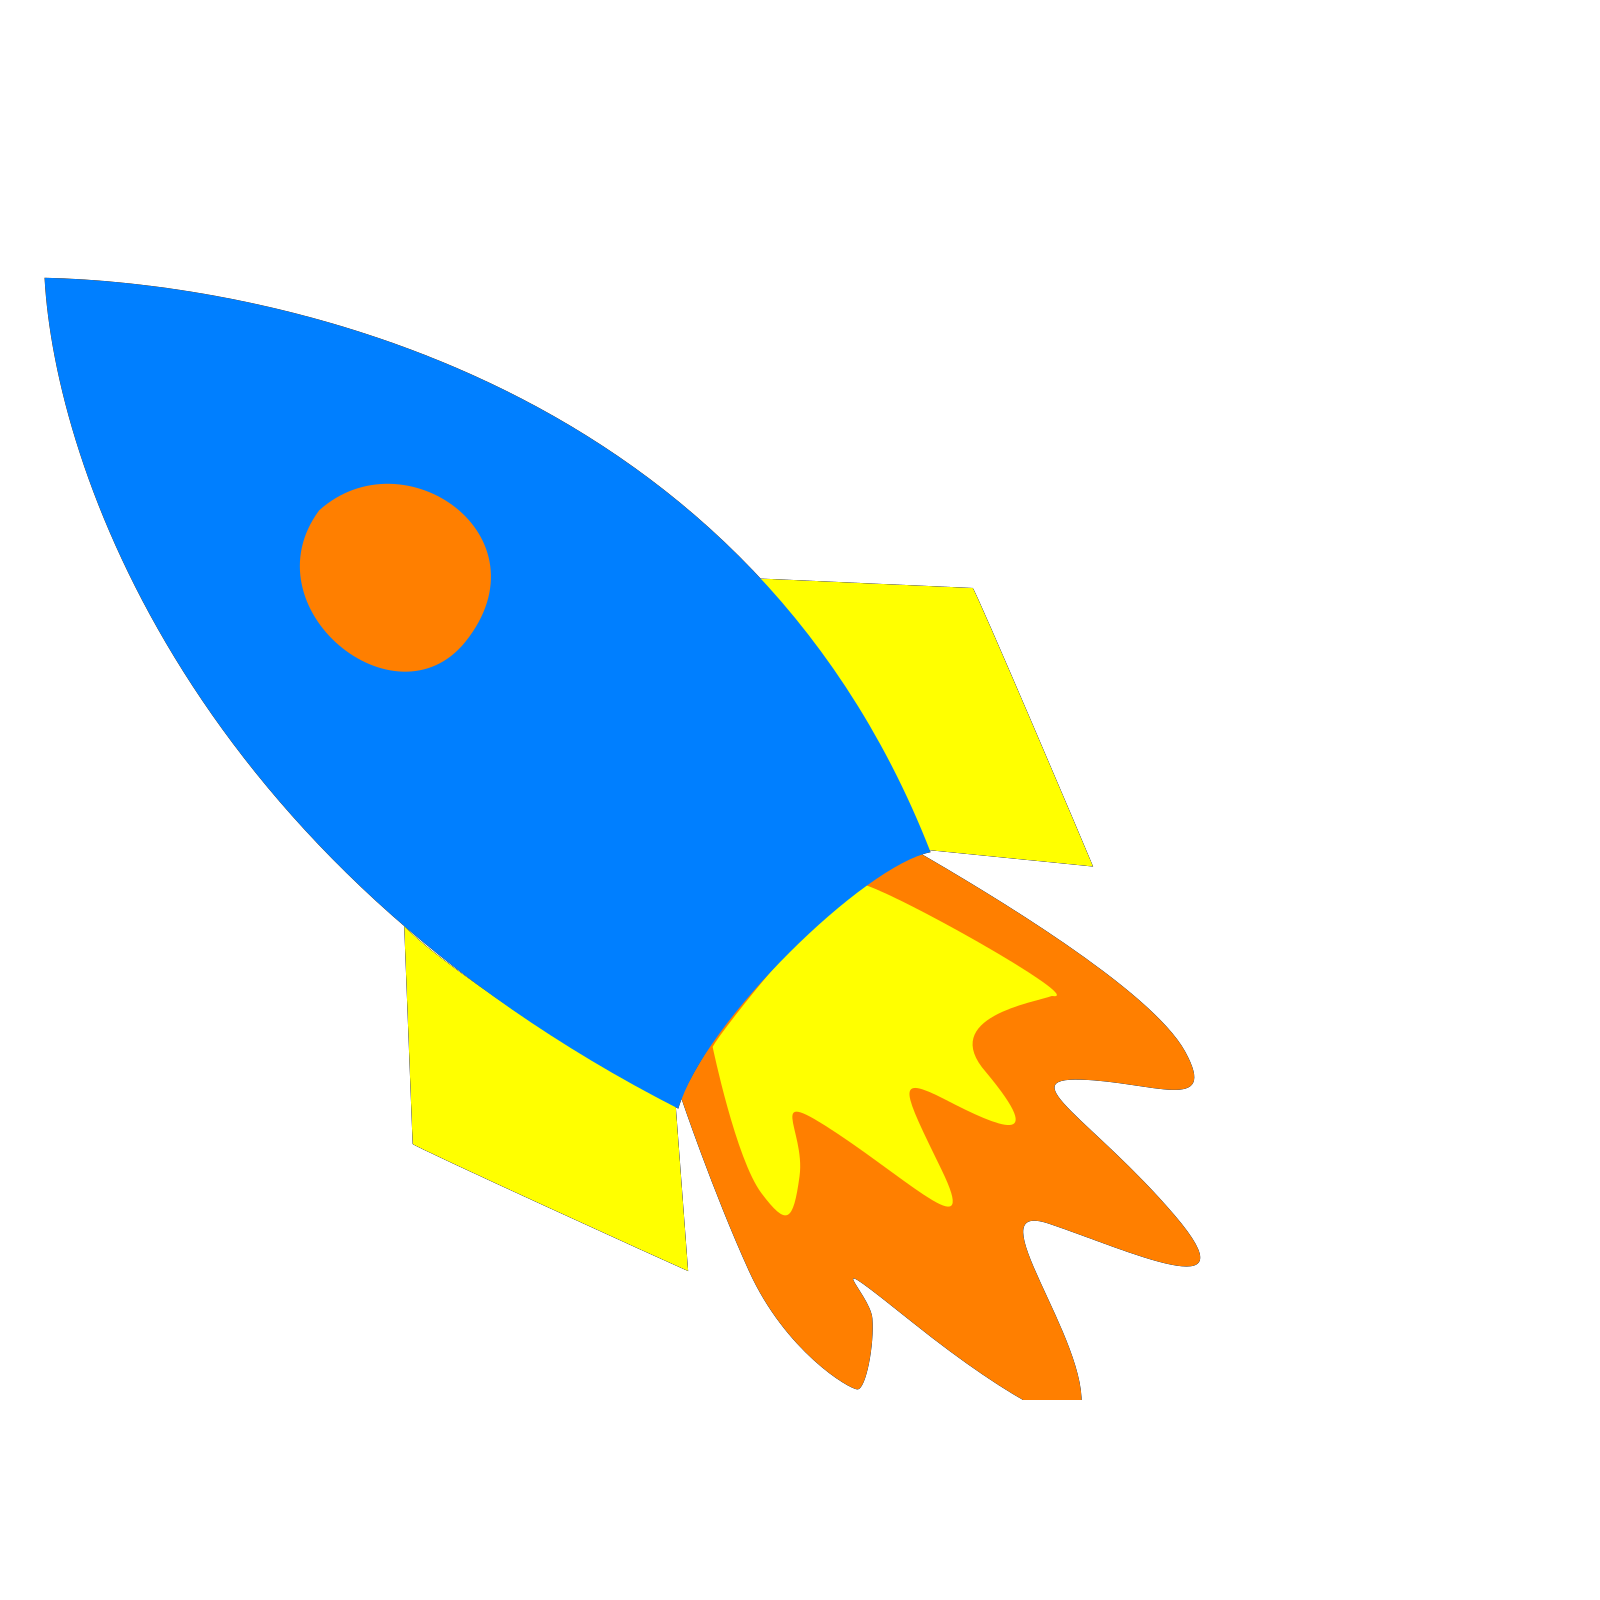 Картинка ракеты для детей цветная. Аппликация. Ракета. Ракета для детей. Изображение ракеты для детей. Трафарет ракеты для аппликации.